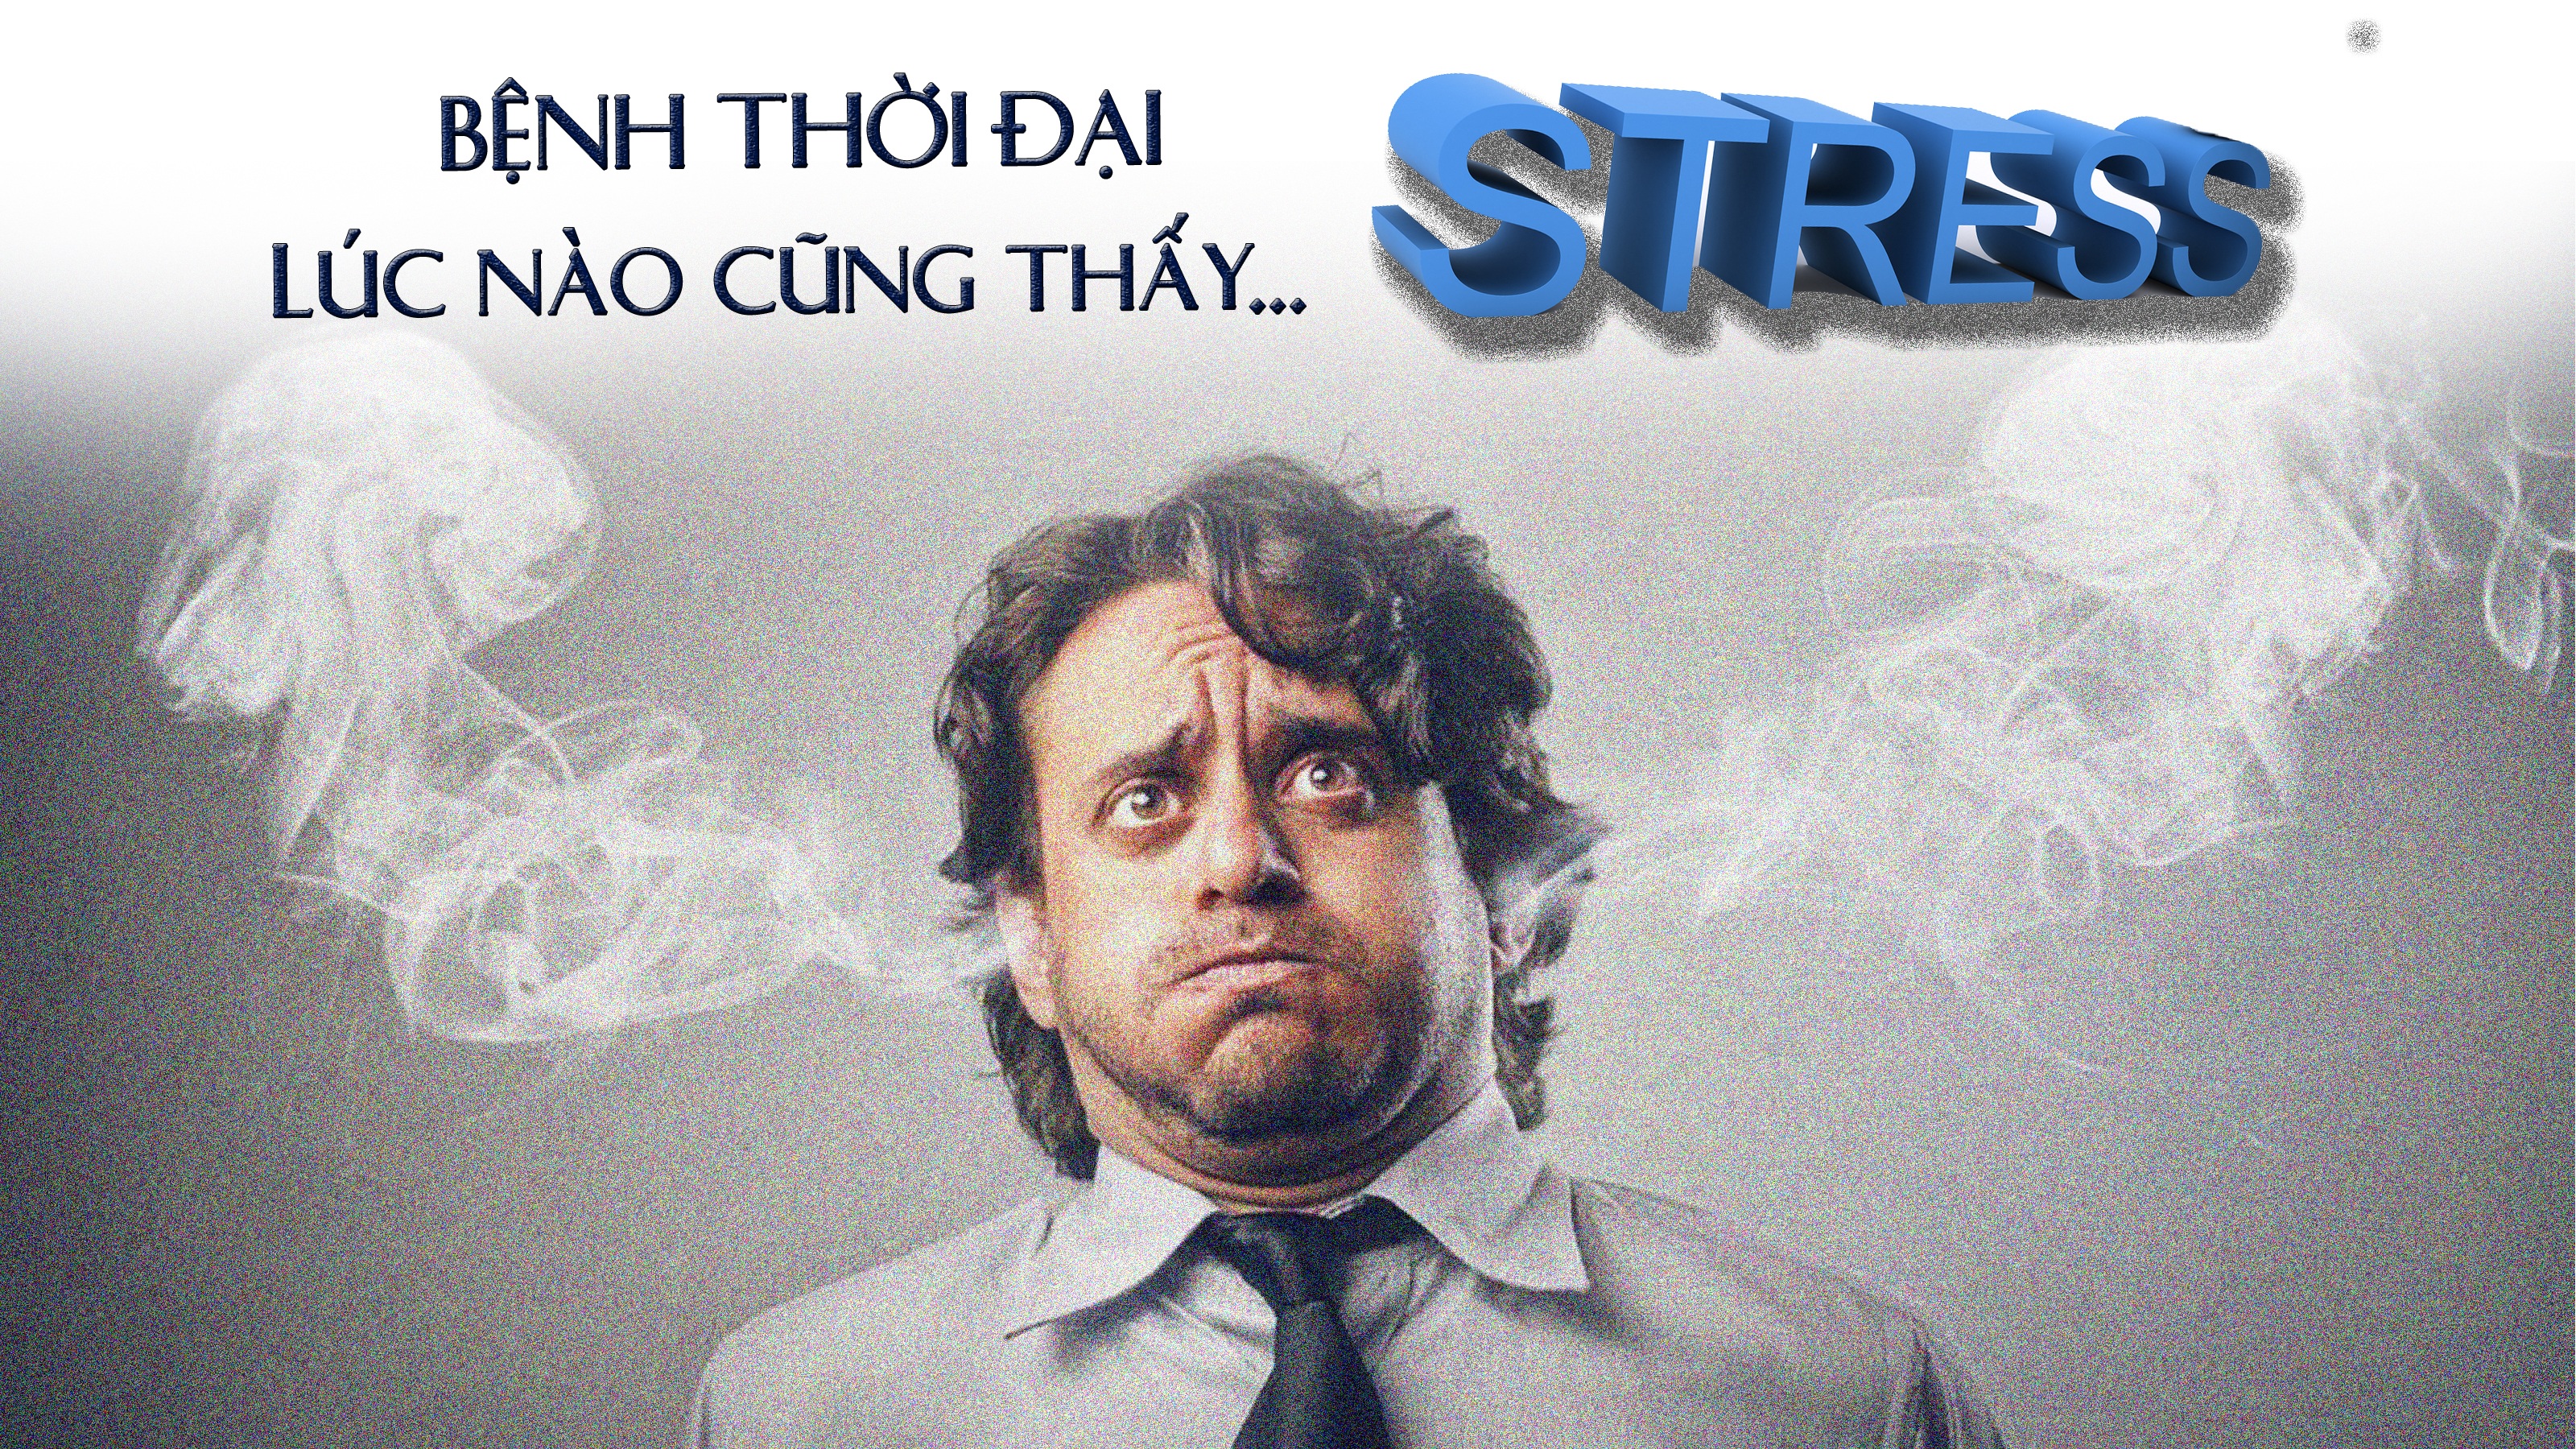 Bệnh thời đại: Lúc nào cũng thấy... stress